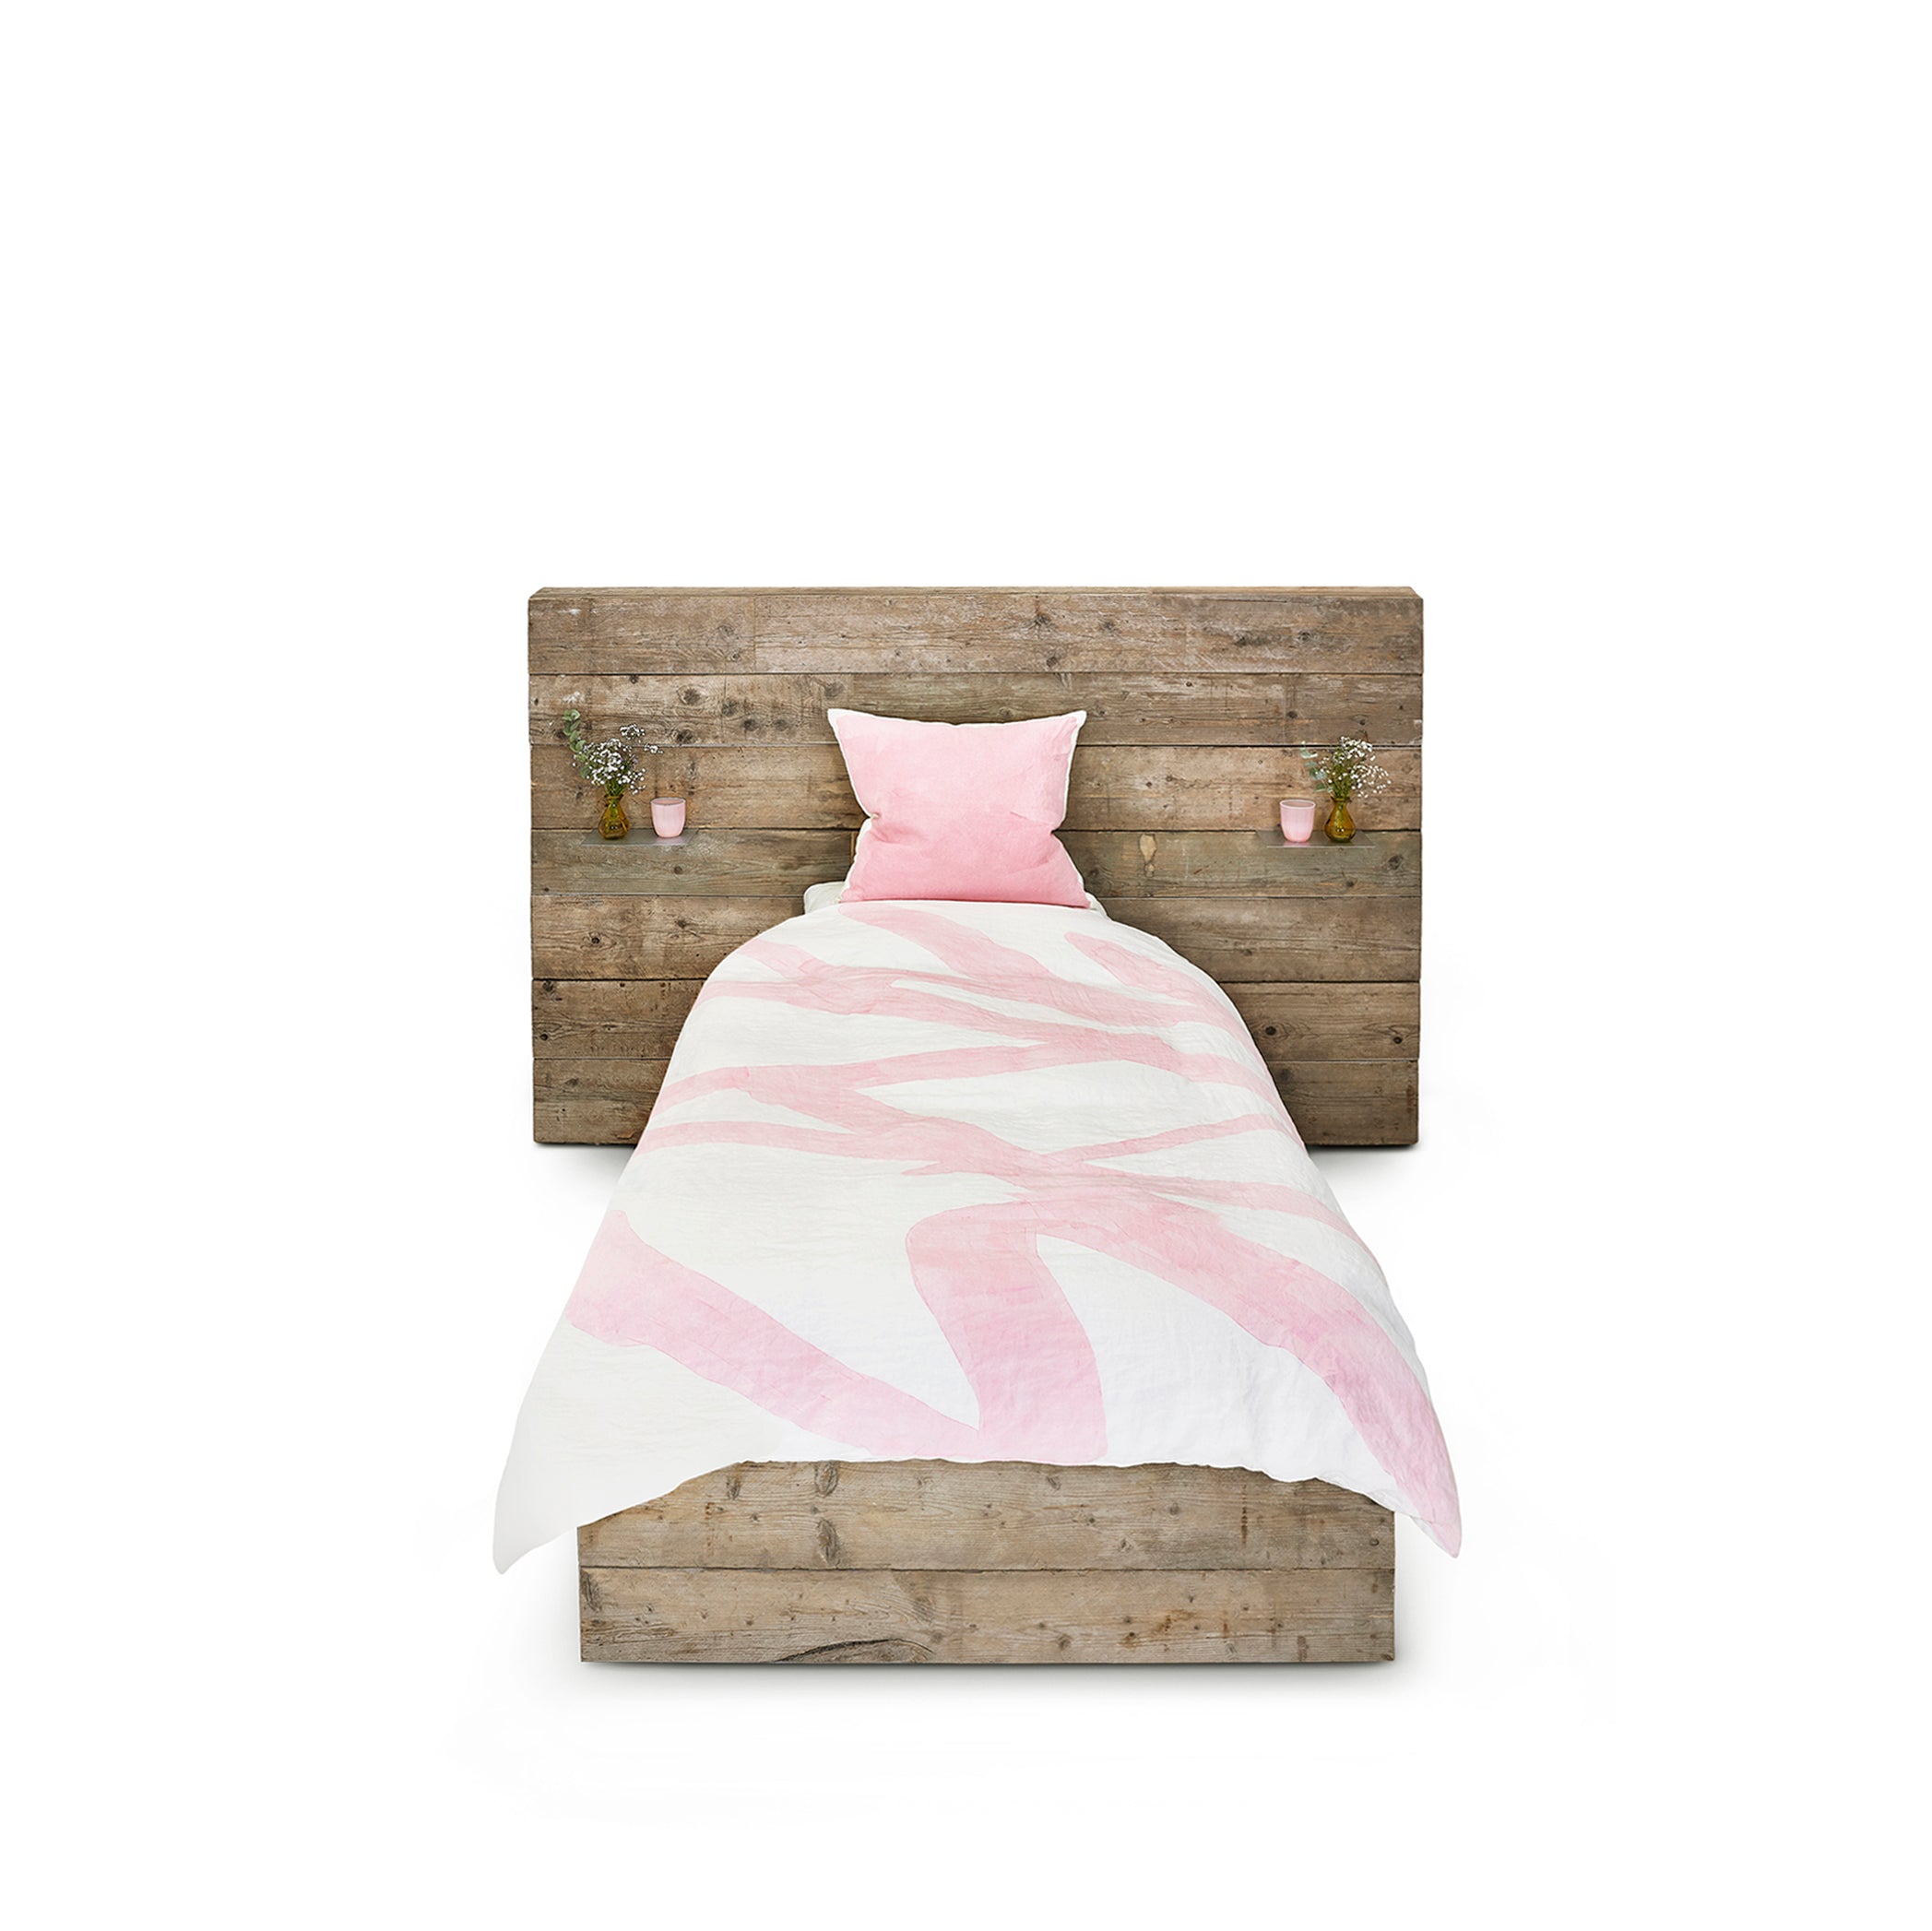 Bespoke Word Linen Duvet Cover In Rose Pink Single Summerill